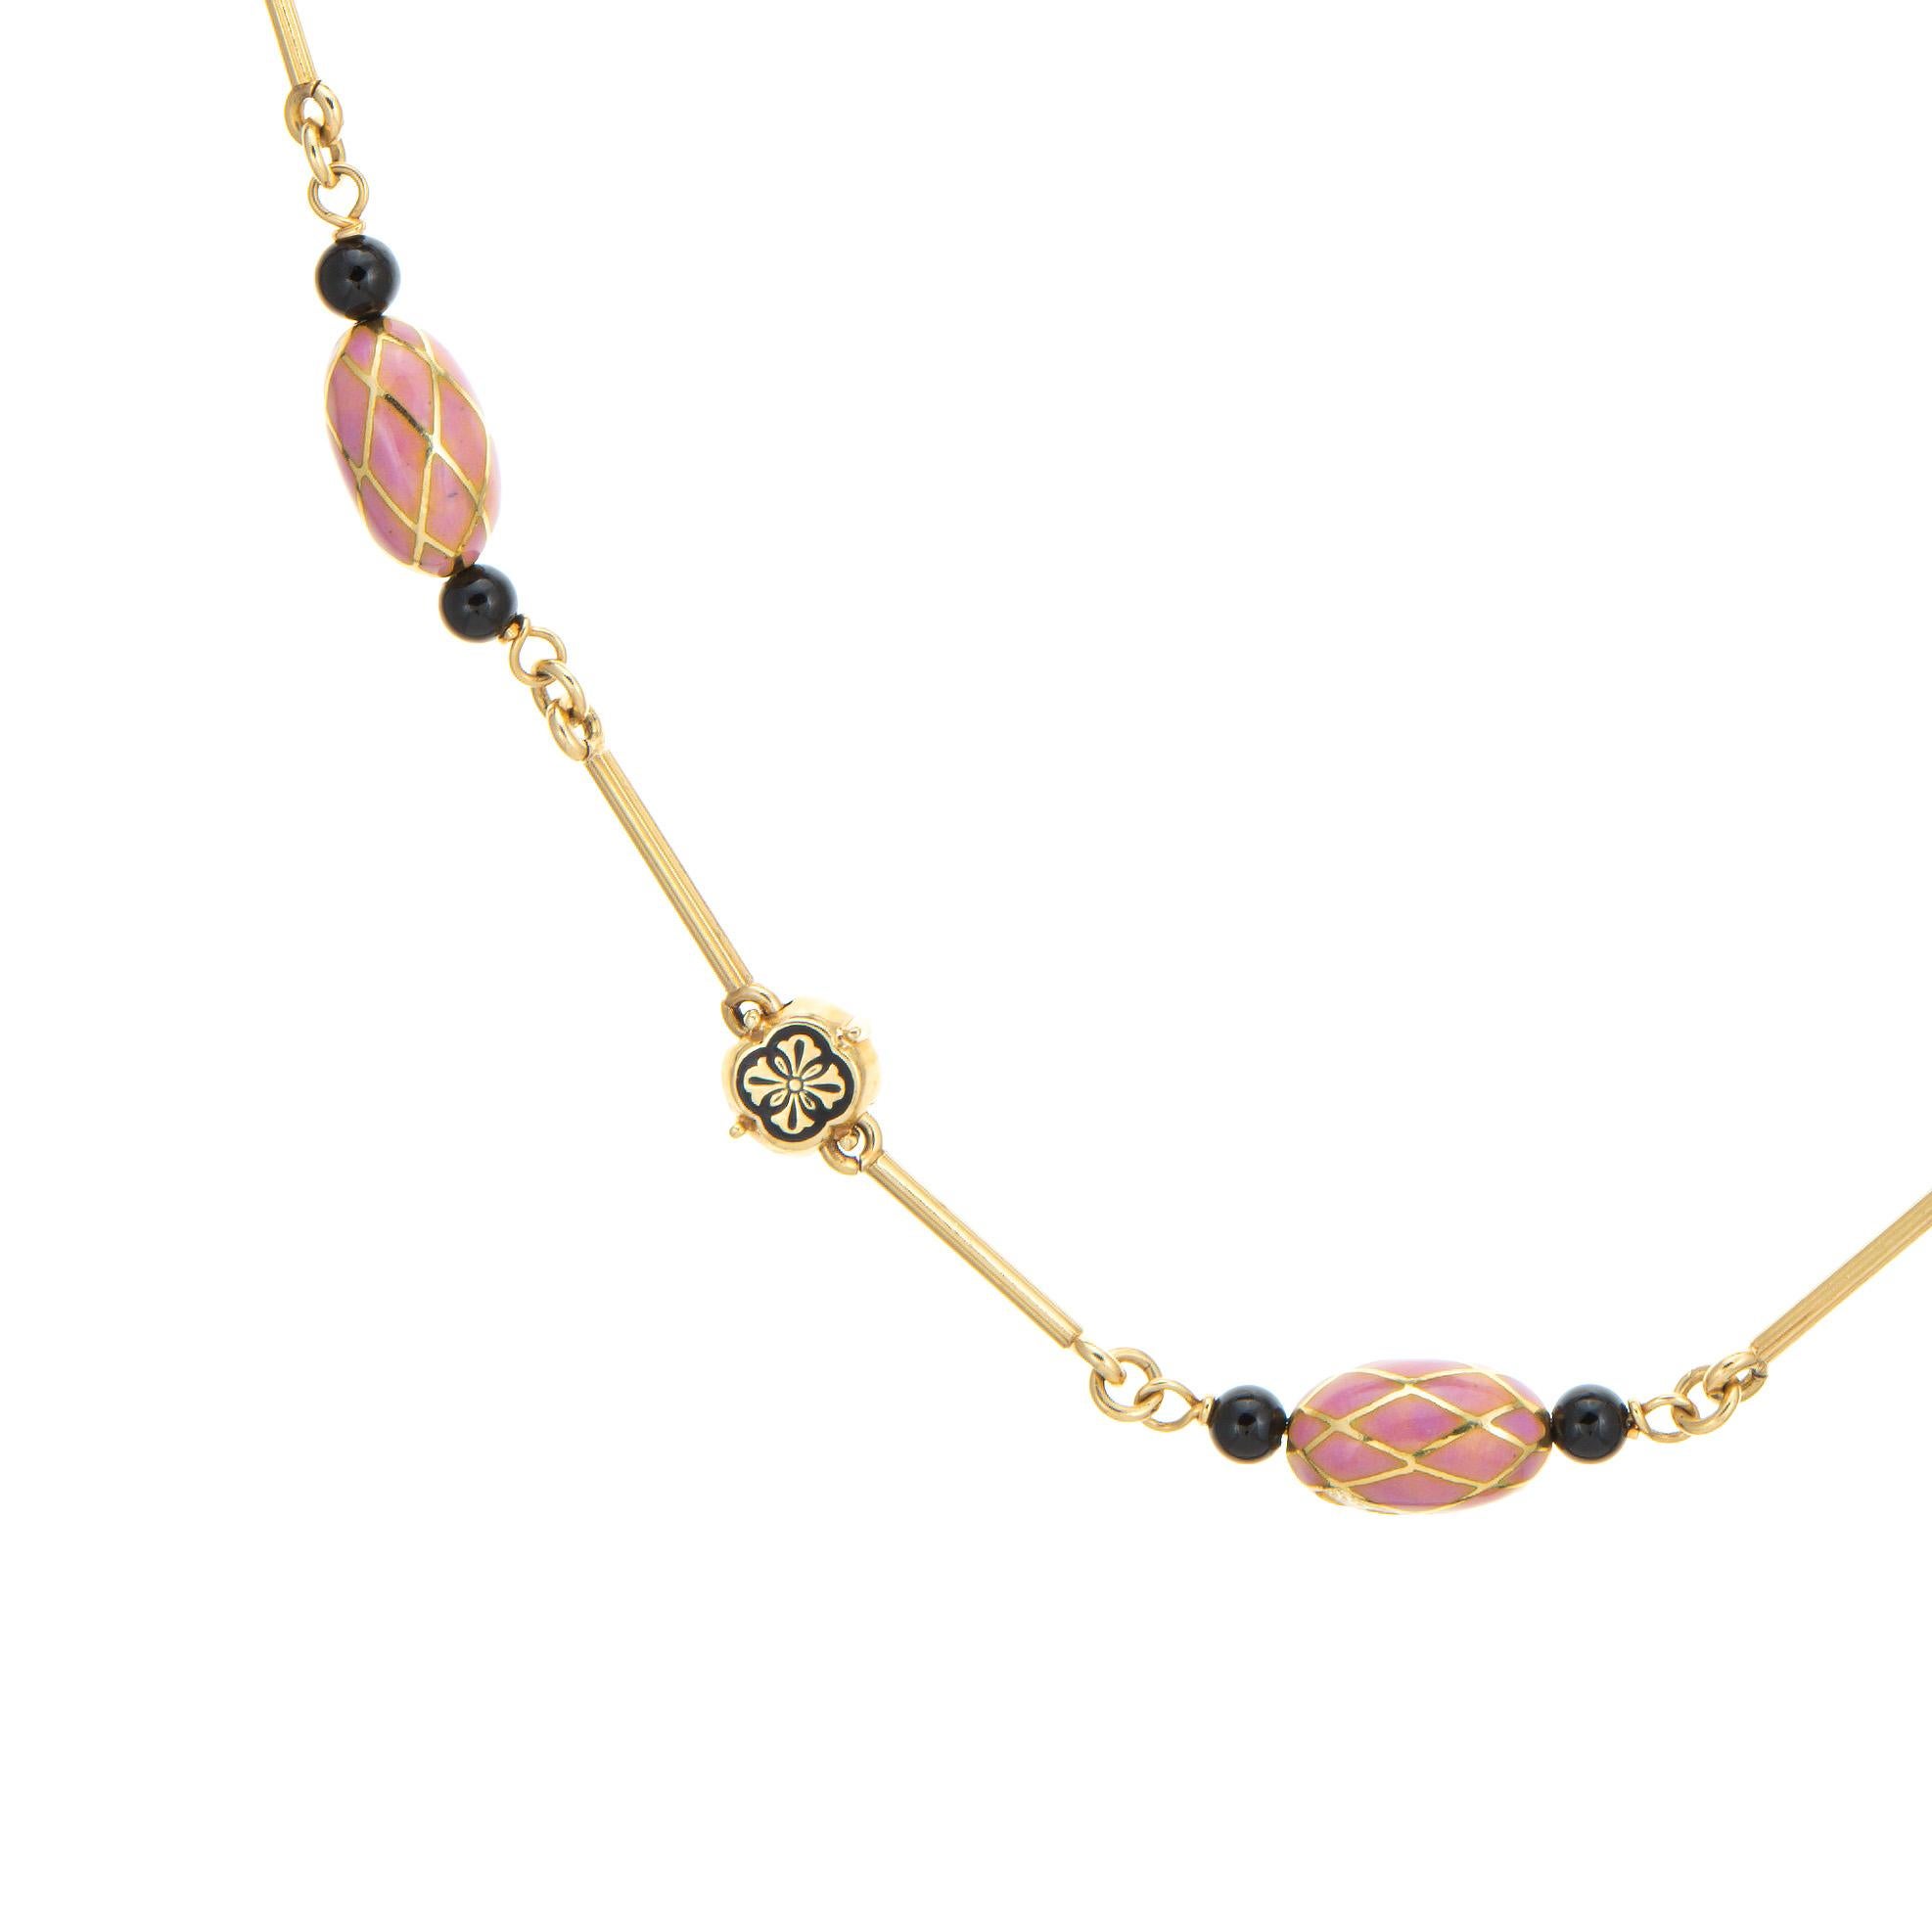 Stilvolle und detailreiche französische Vintage-Import-Halskette (ca. 1960er bis 1970er Jahre) aus 18 Karat Gelbgold. 

Die wunderschön gearbeitete Halskette besteht aus rosafarbenen, emaillierten Kugeln, die an beiden Enden von schwarzen Onyxperlen